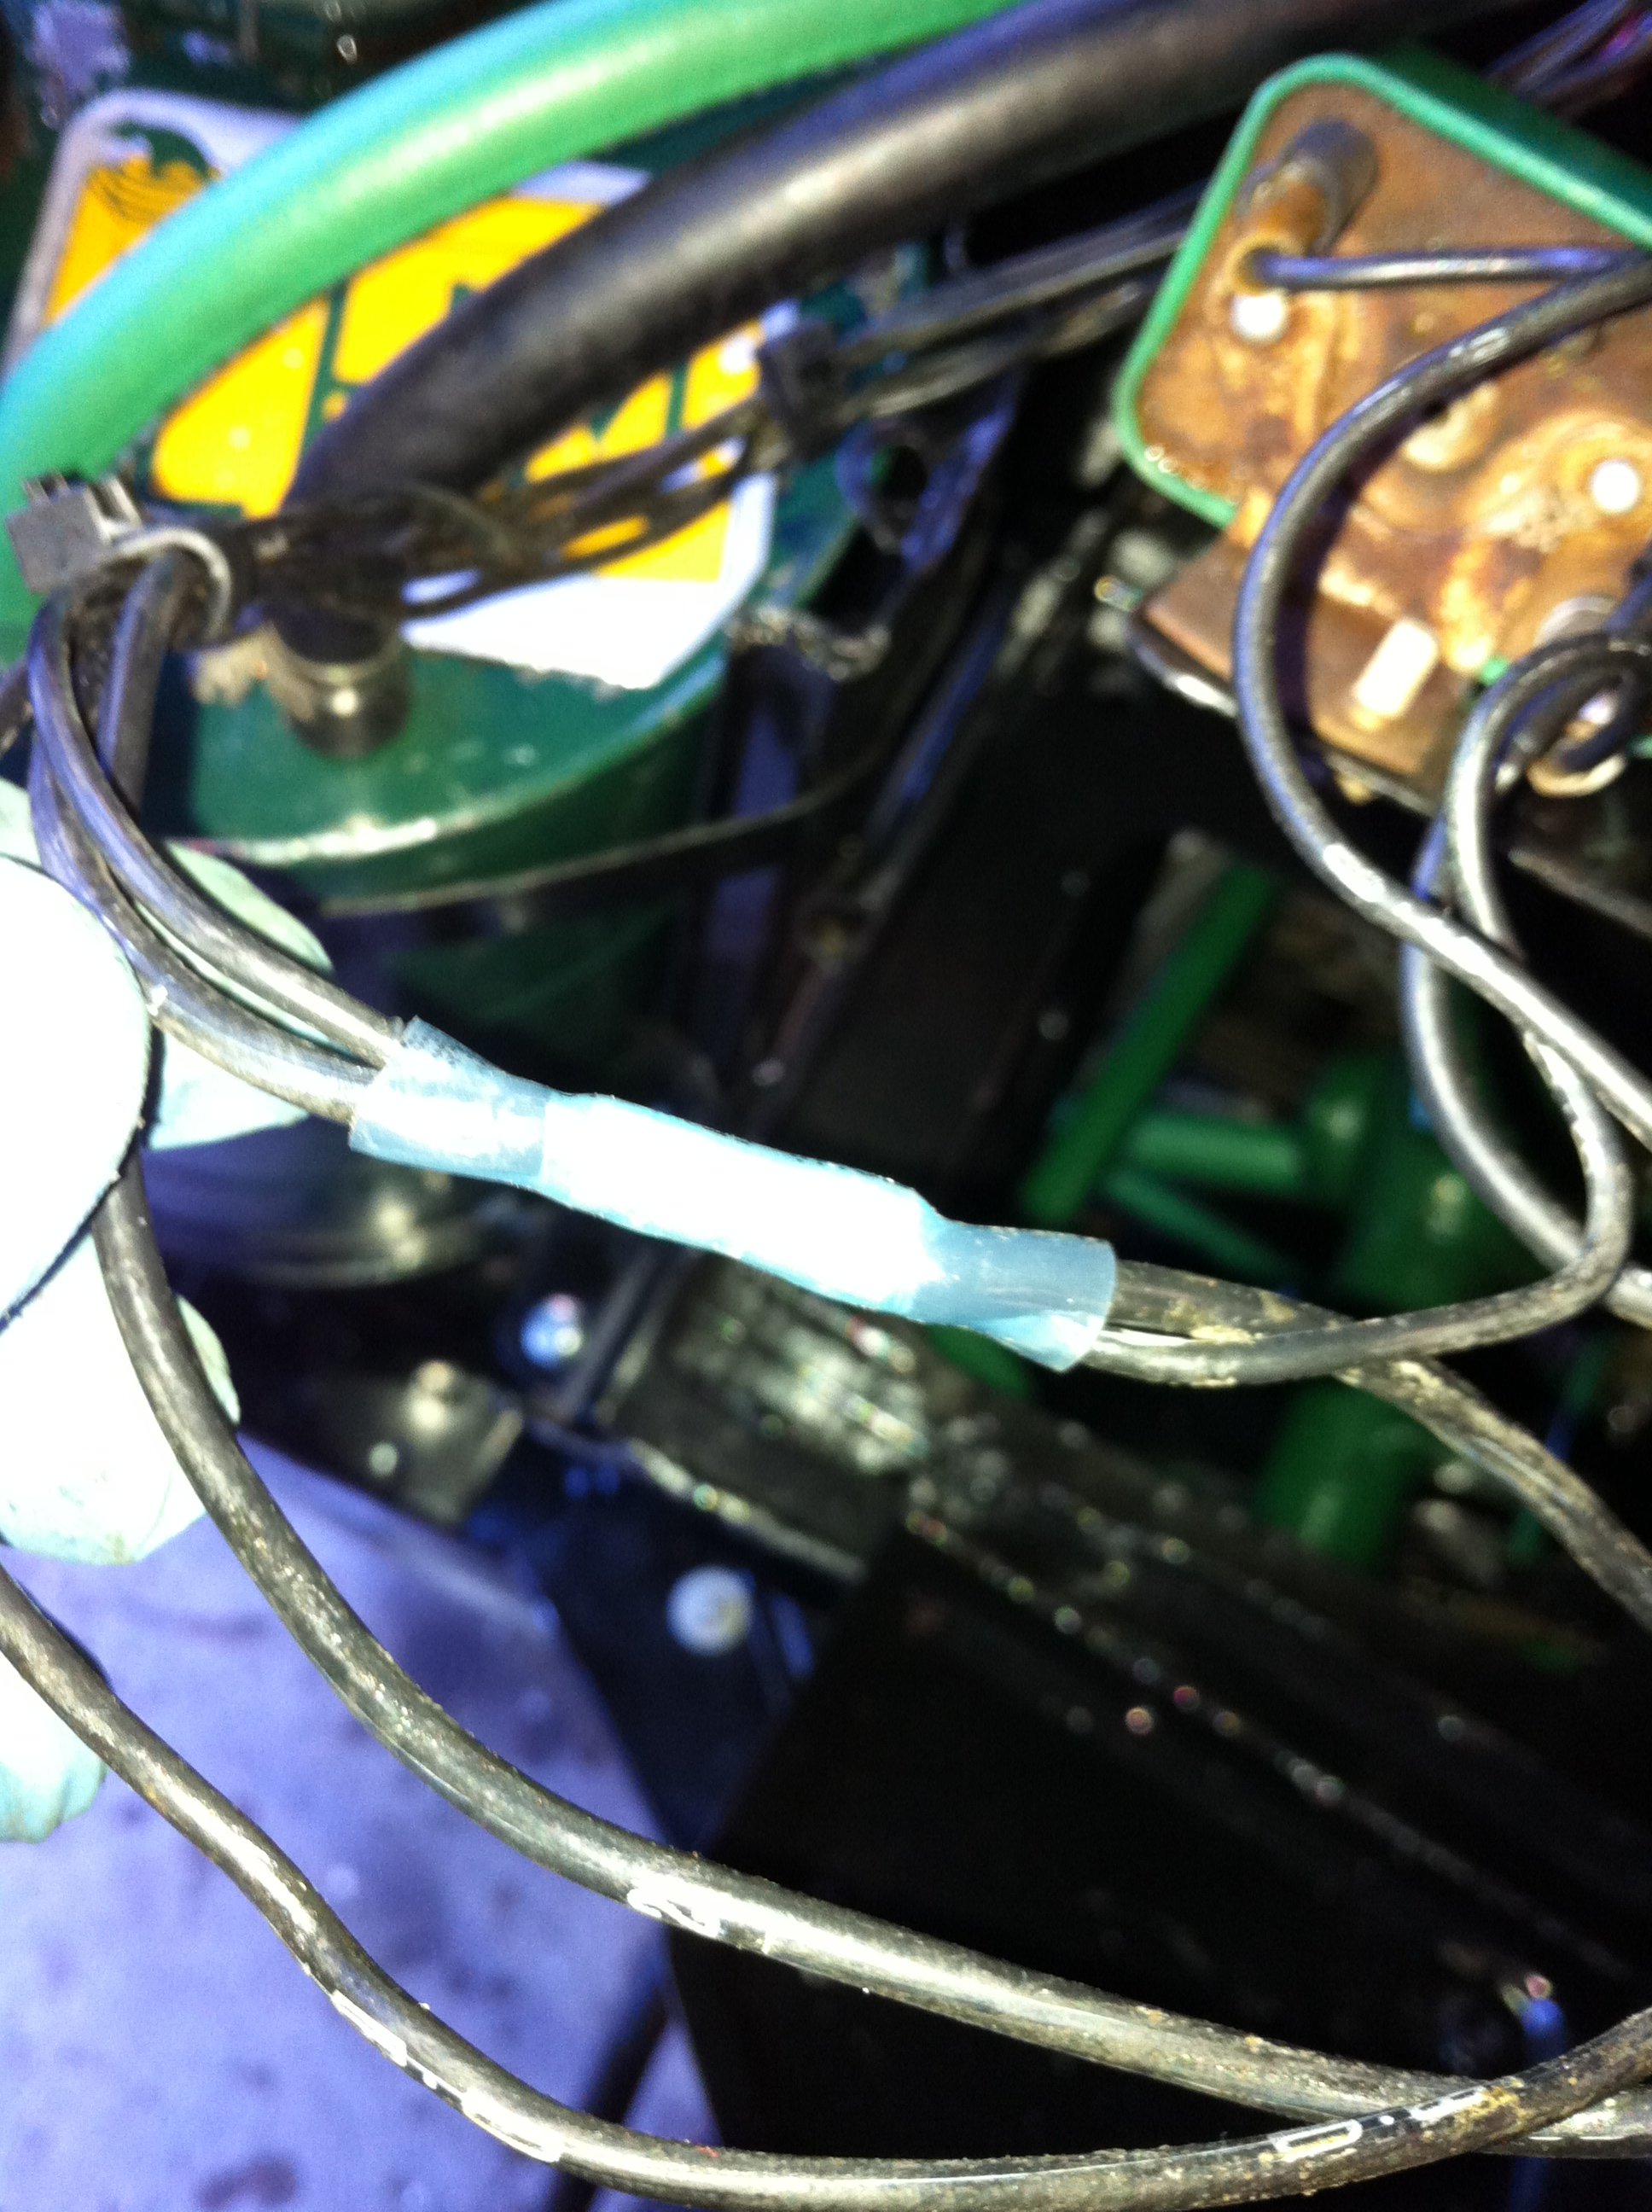 Wiring repairs